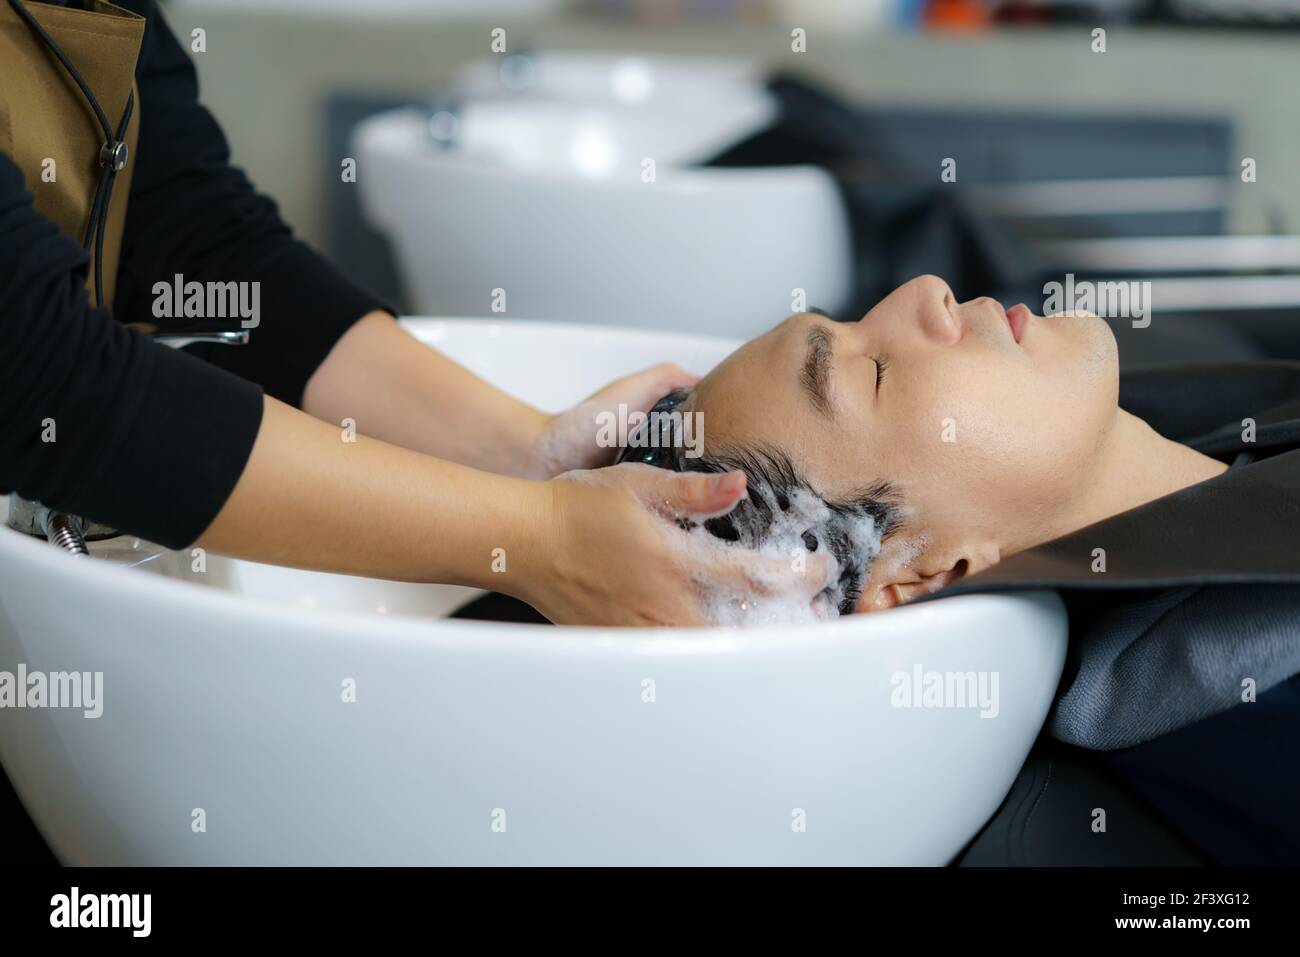 Le coiffeur applique du shampooing et massante les cheveux d'un client. Homme ayant ses cheveux lavés dans un salon de coiffure. Banque D'Images